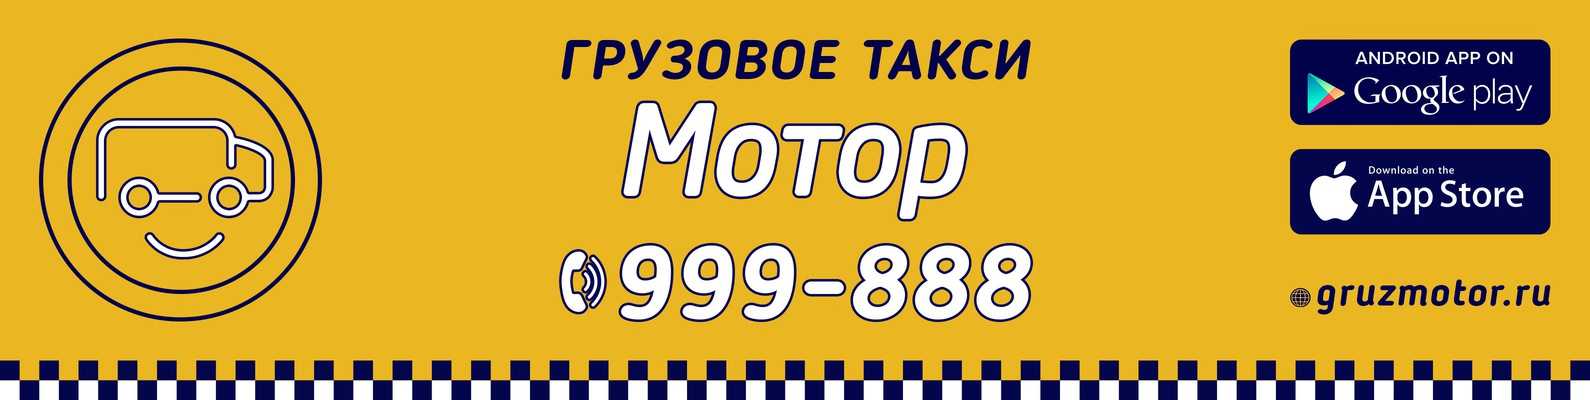 Такси мотор телефон. Такси мотор. Грузовое такси мотор Волгоград. Такси мотор Волгоград. Логотип такси мотор.